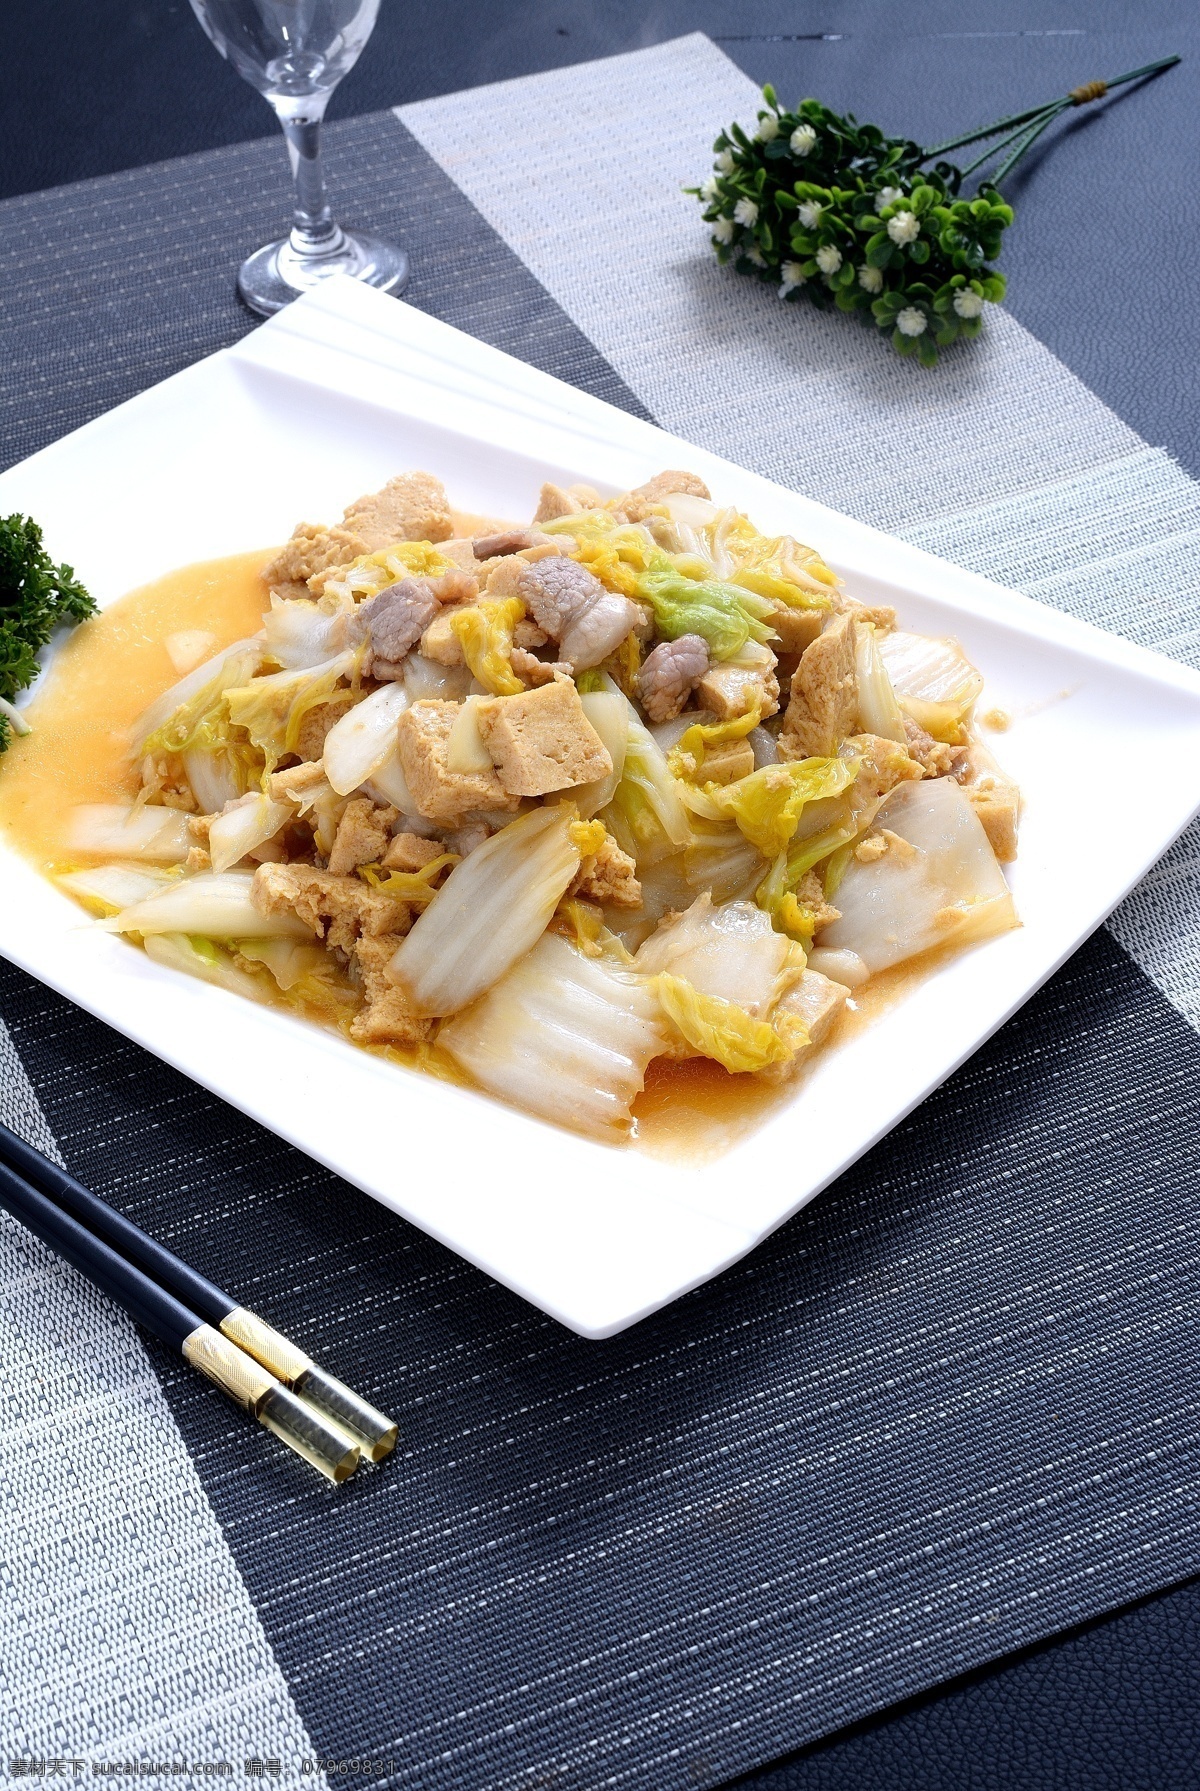 五花肉 冻豆腐 炒 白菜 炒白菜 炒冻豆腐 炒五花肉 餐饮美食 传统美食